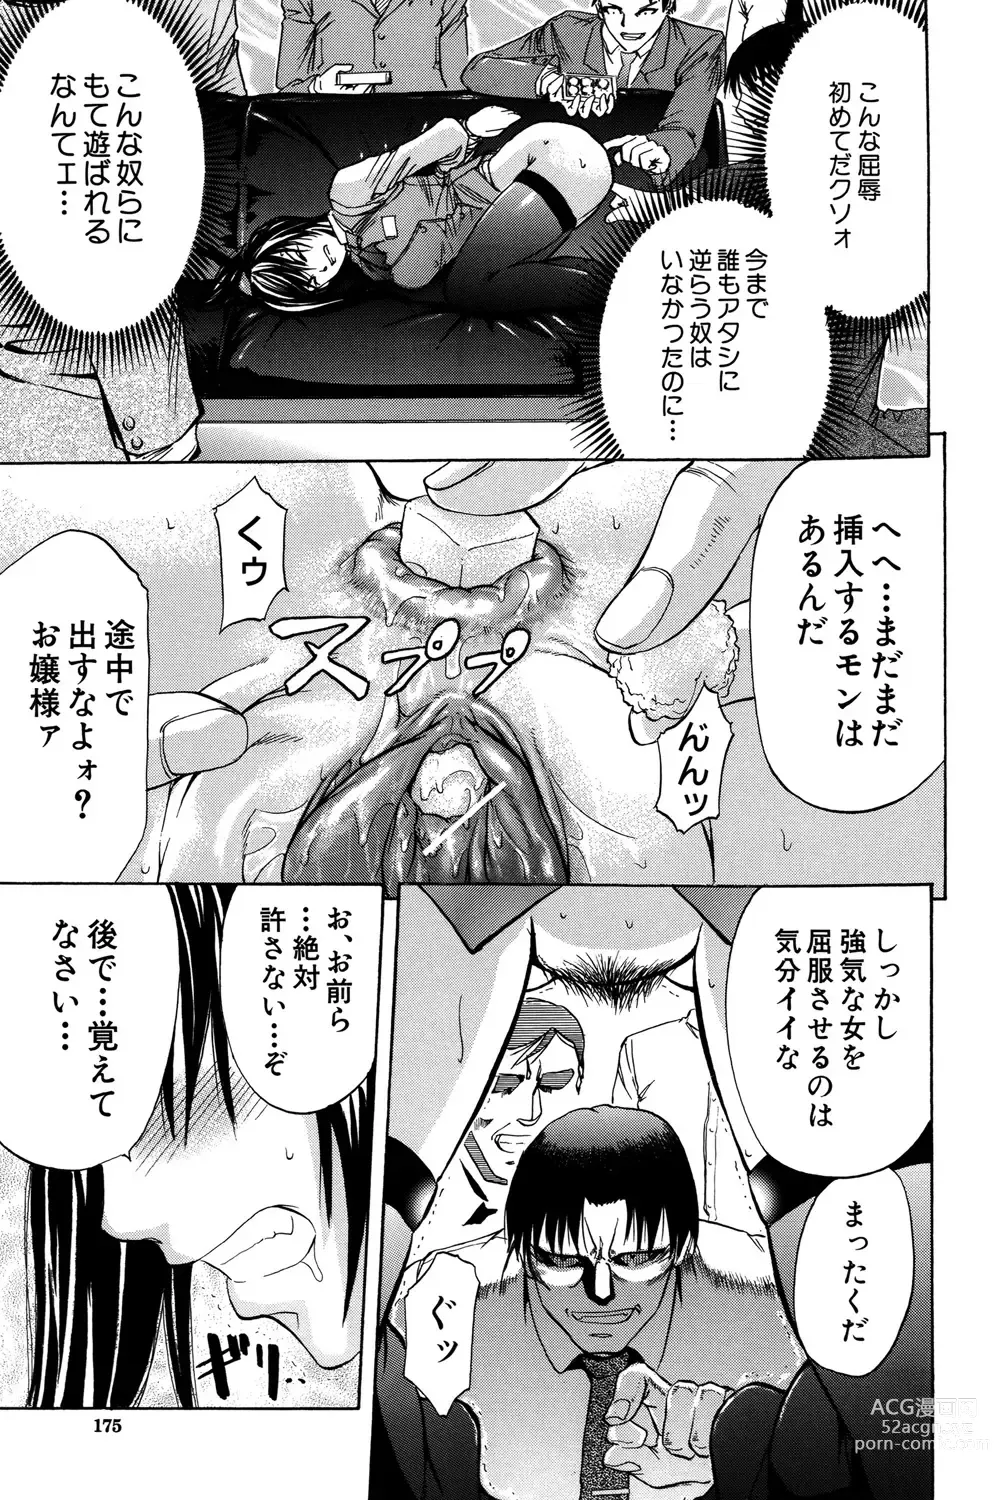 Page 176 of manga ANAL BACKER